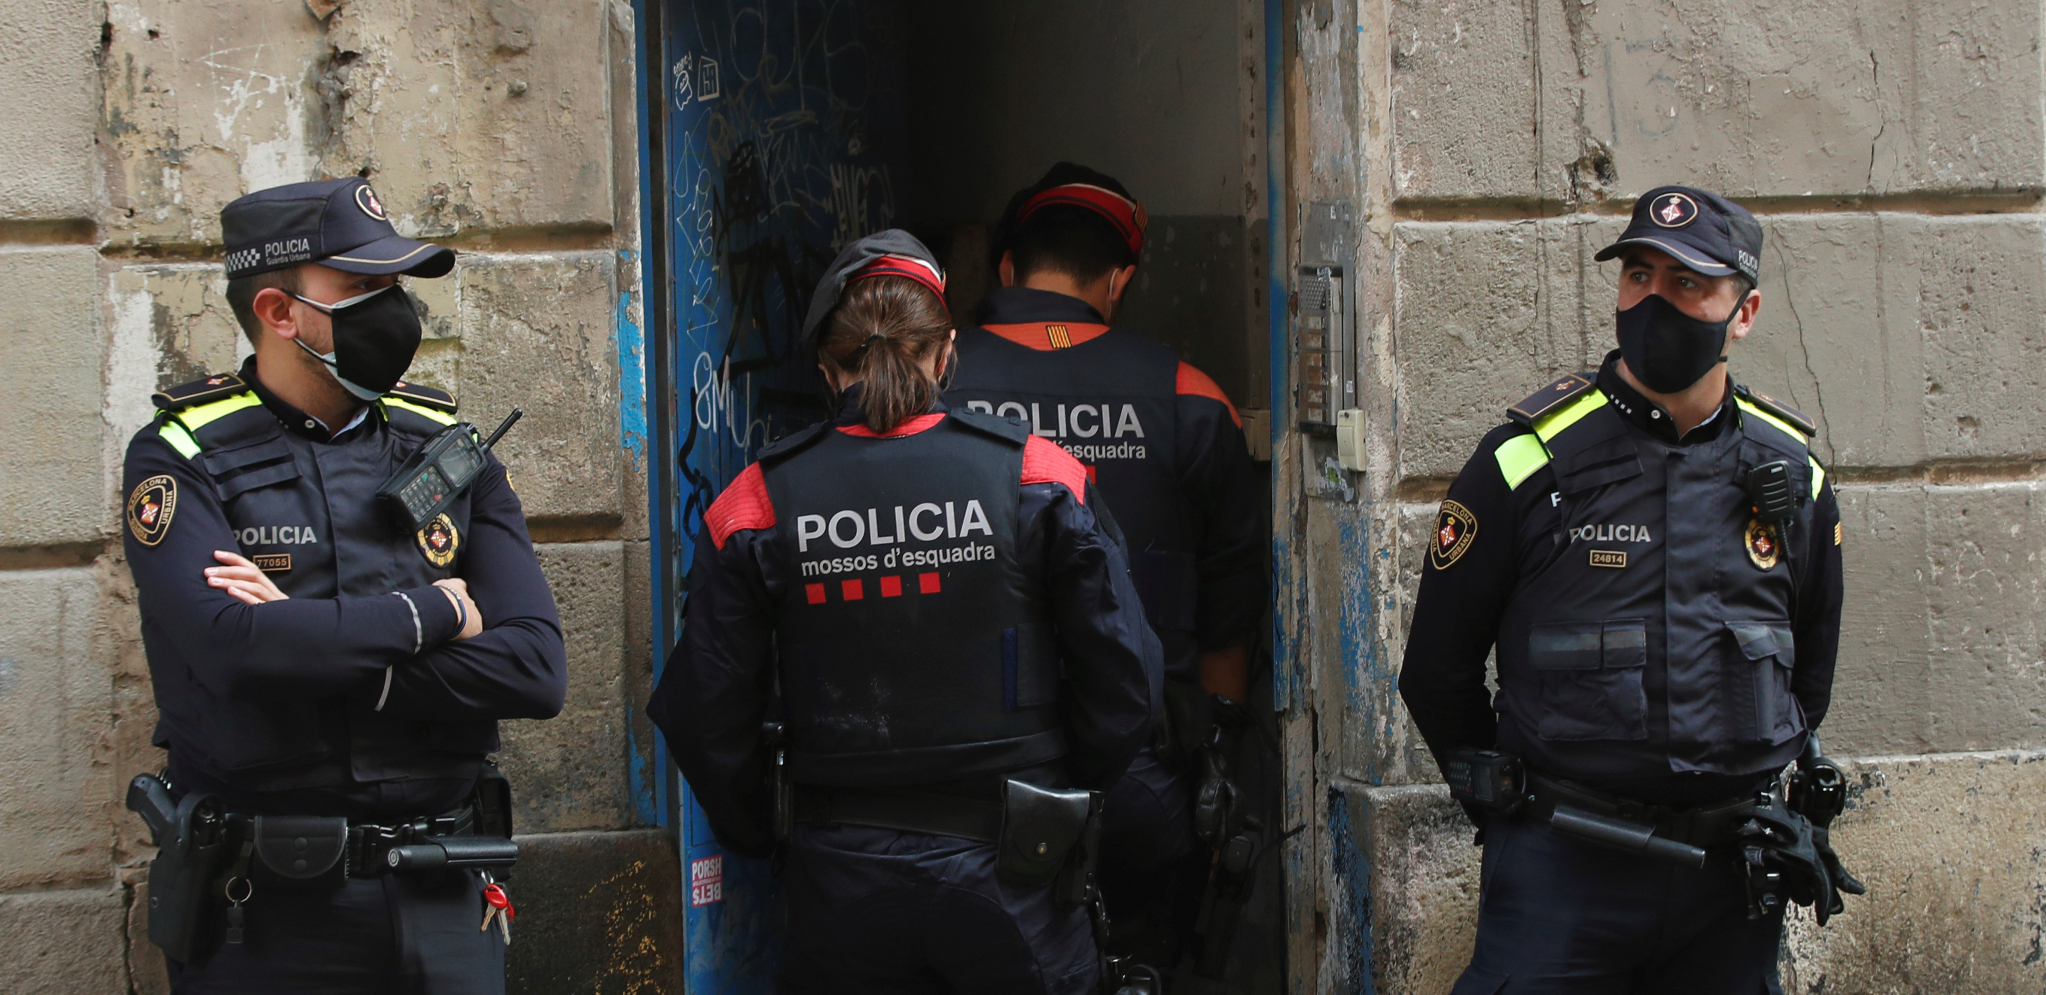 NAJVEĆA SVETSKA ZAPLENA DROGE Španska policija pronašla 32 tone marihuane u vrednosti od 64 miliona evra